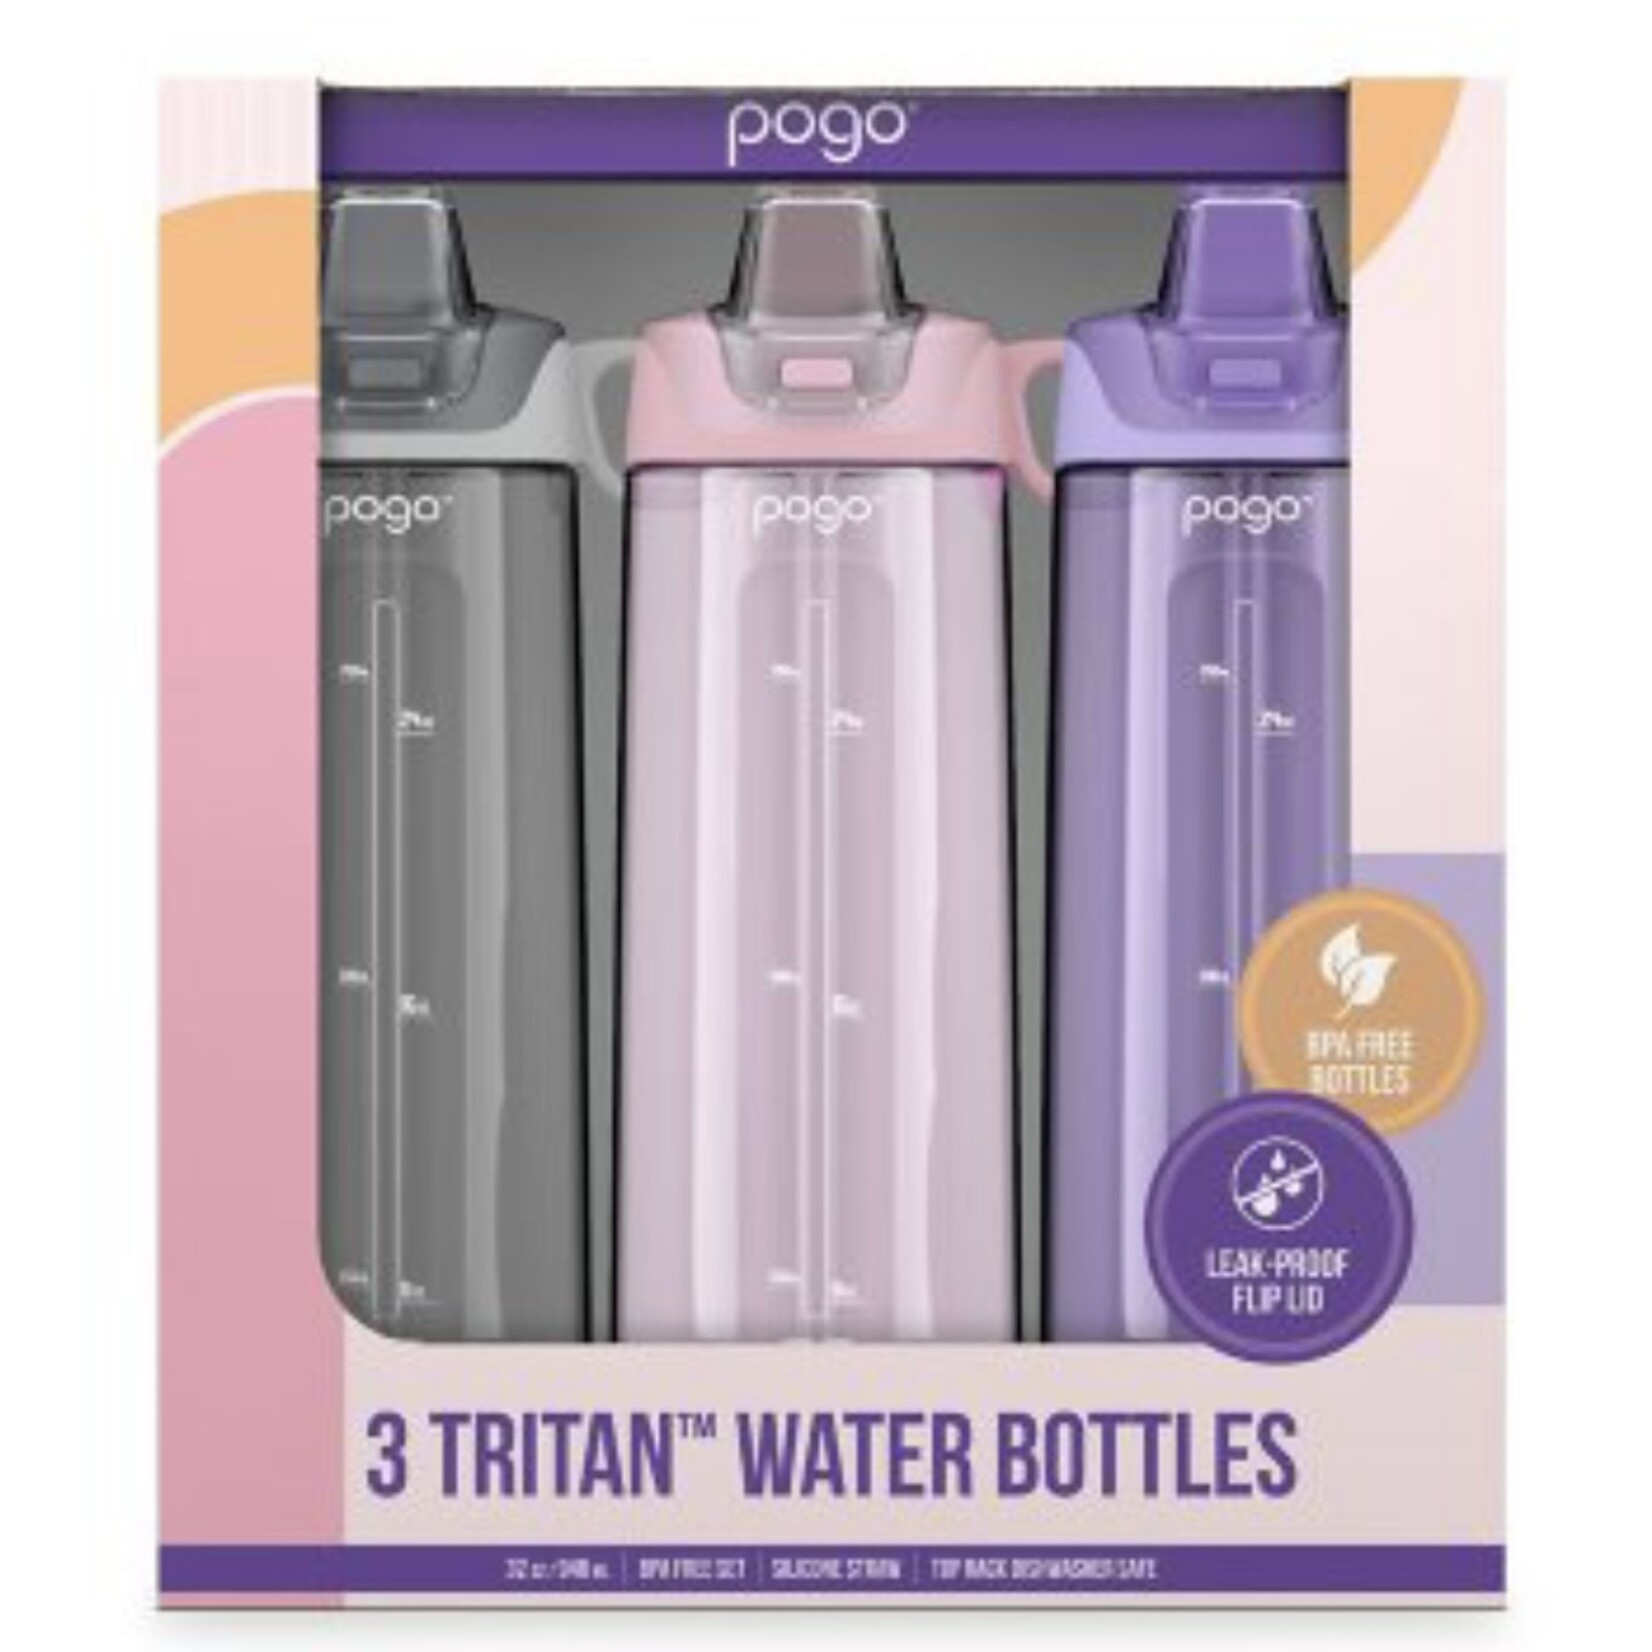 https://cdn.shoplightspeed.com/shops/668198/files/57567315/1652x1652x2/discount-central-pogo-32-oz-tristan-water-bottles.jpg